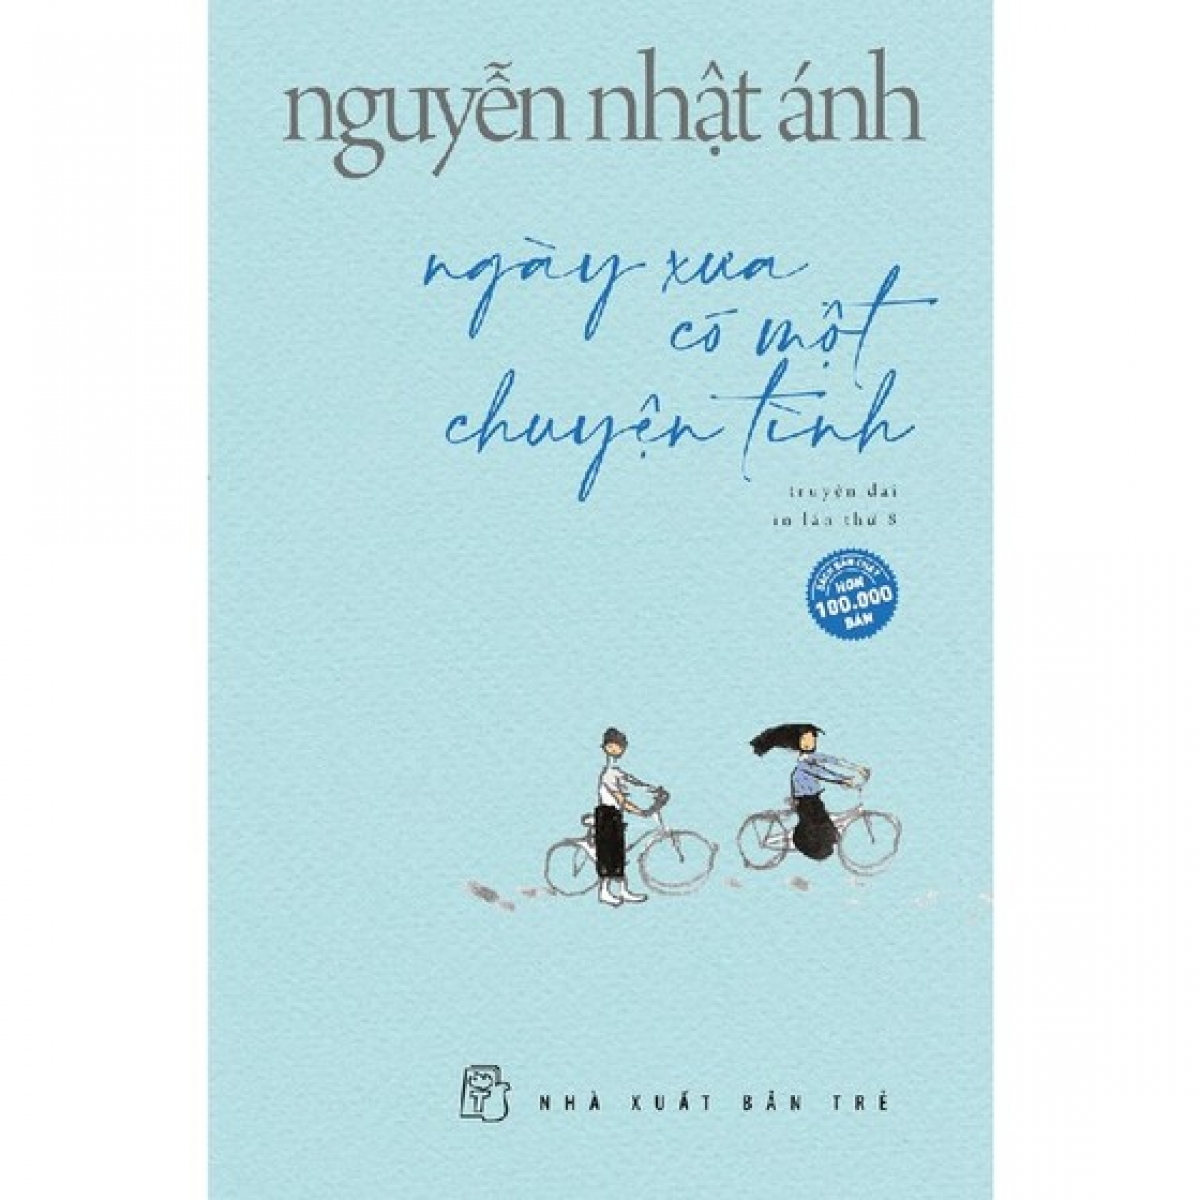 "Ngày xưa có một chuyện tình" là truyện dài được yêu thích của nhà văn Nguyễn Nhật Ánh